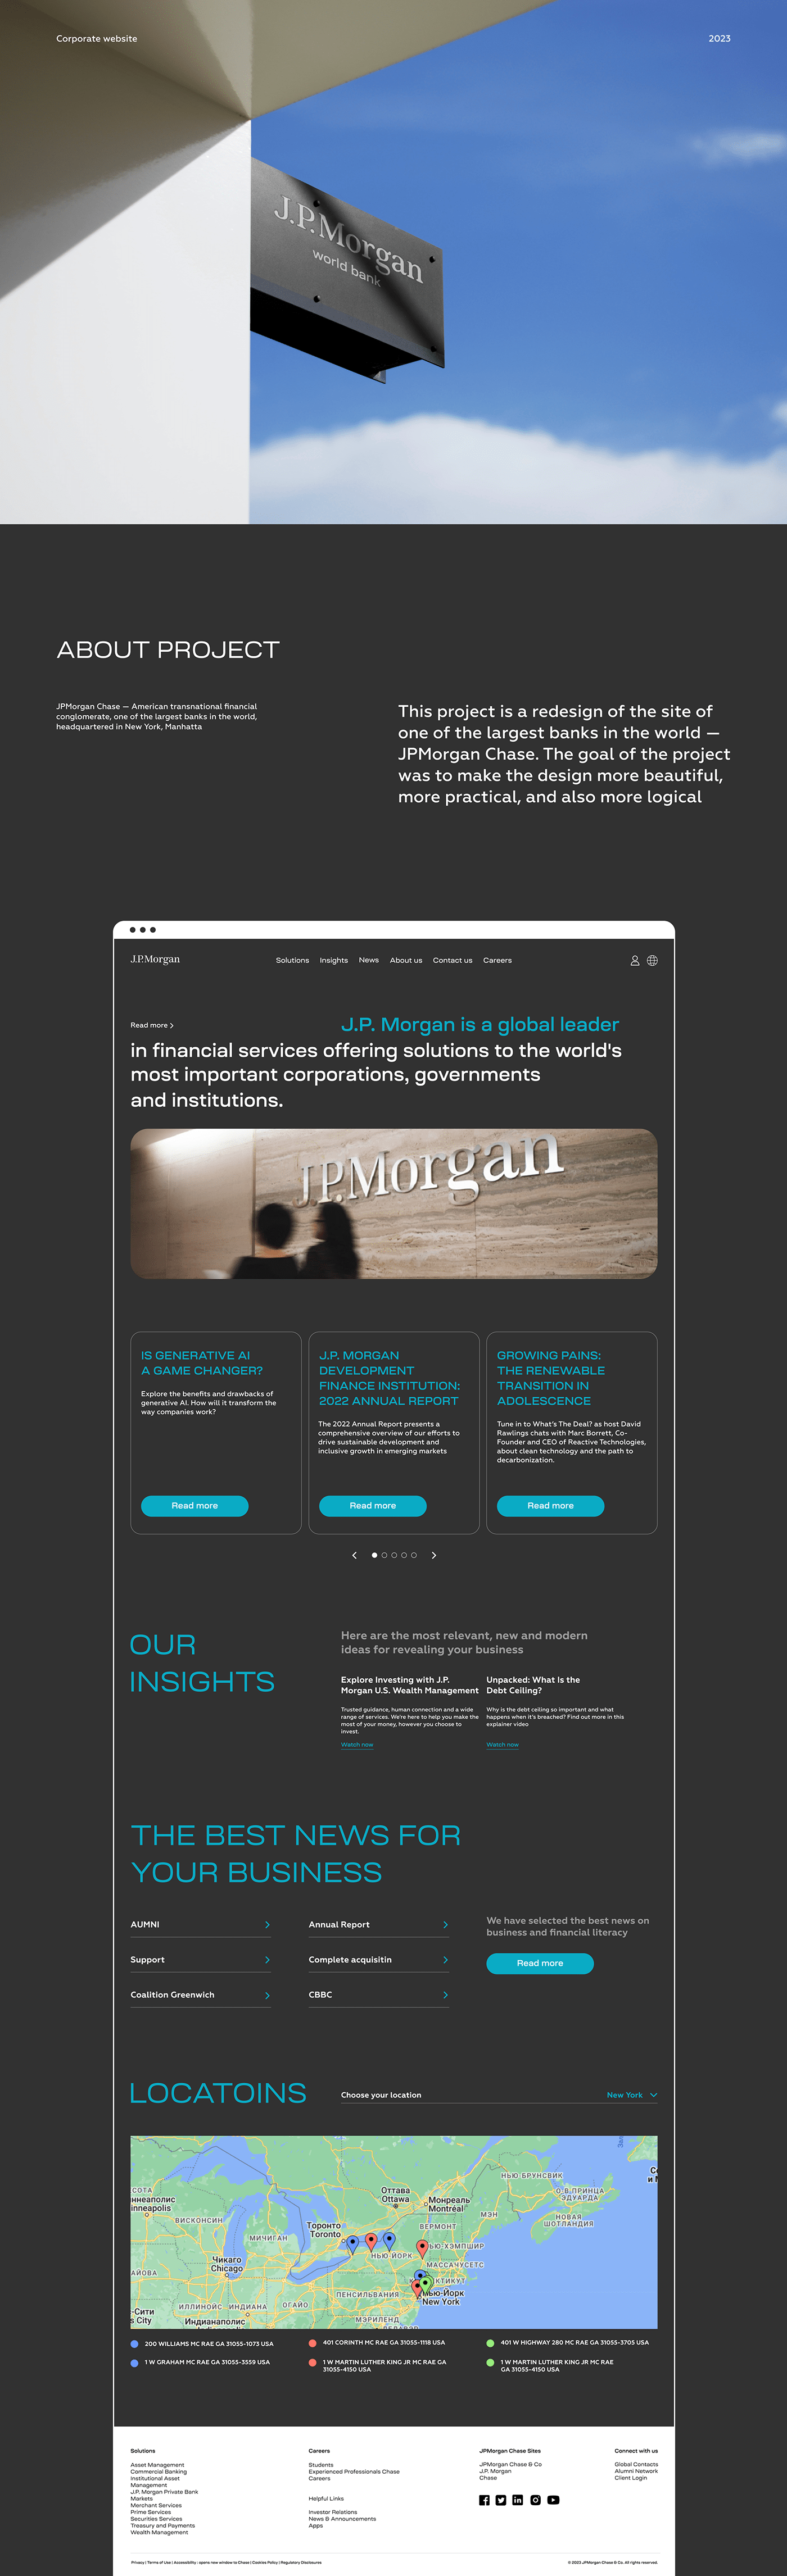 ux/ui design Многостраничный сайт веб-дизайн фигма